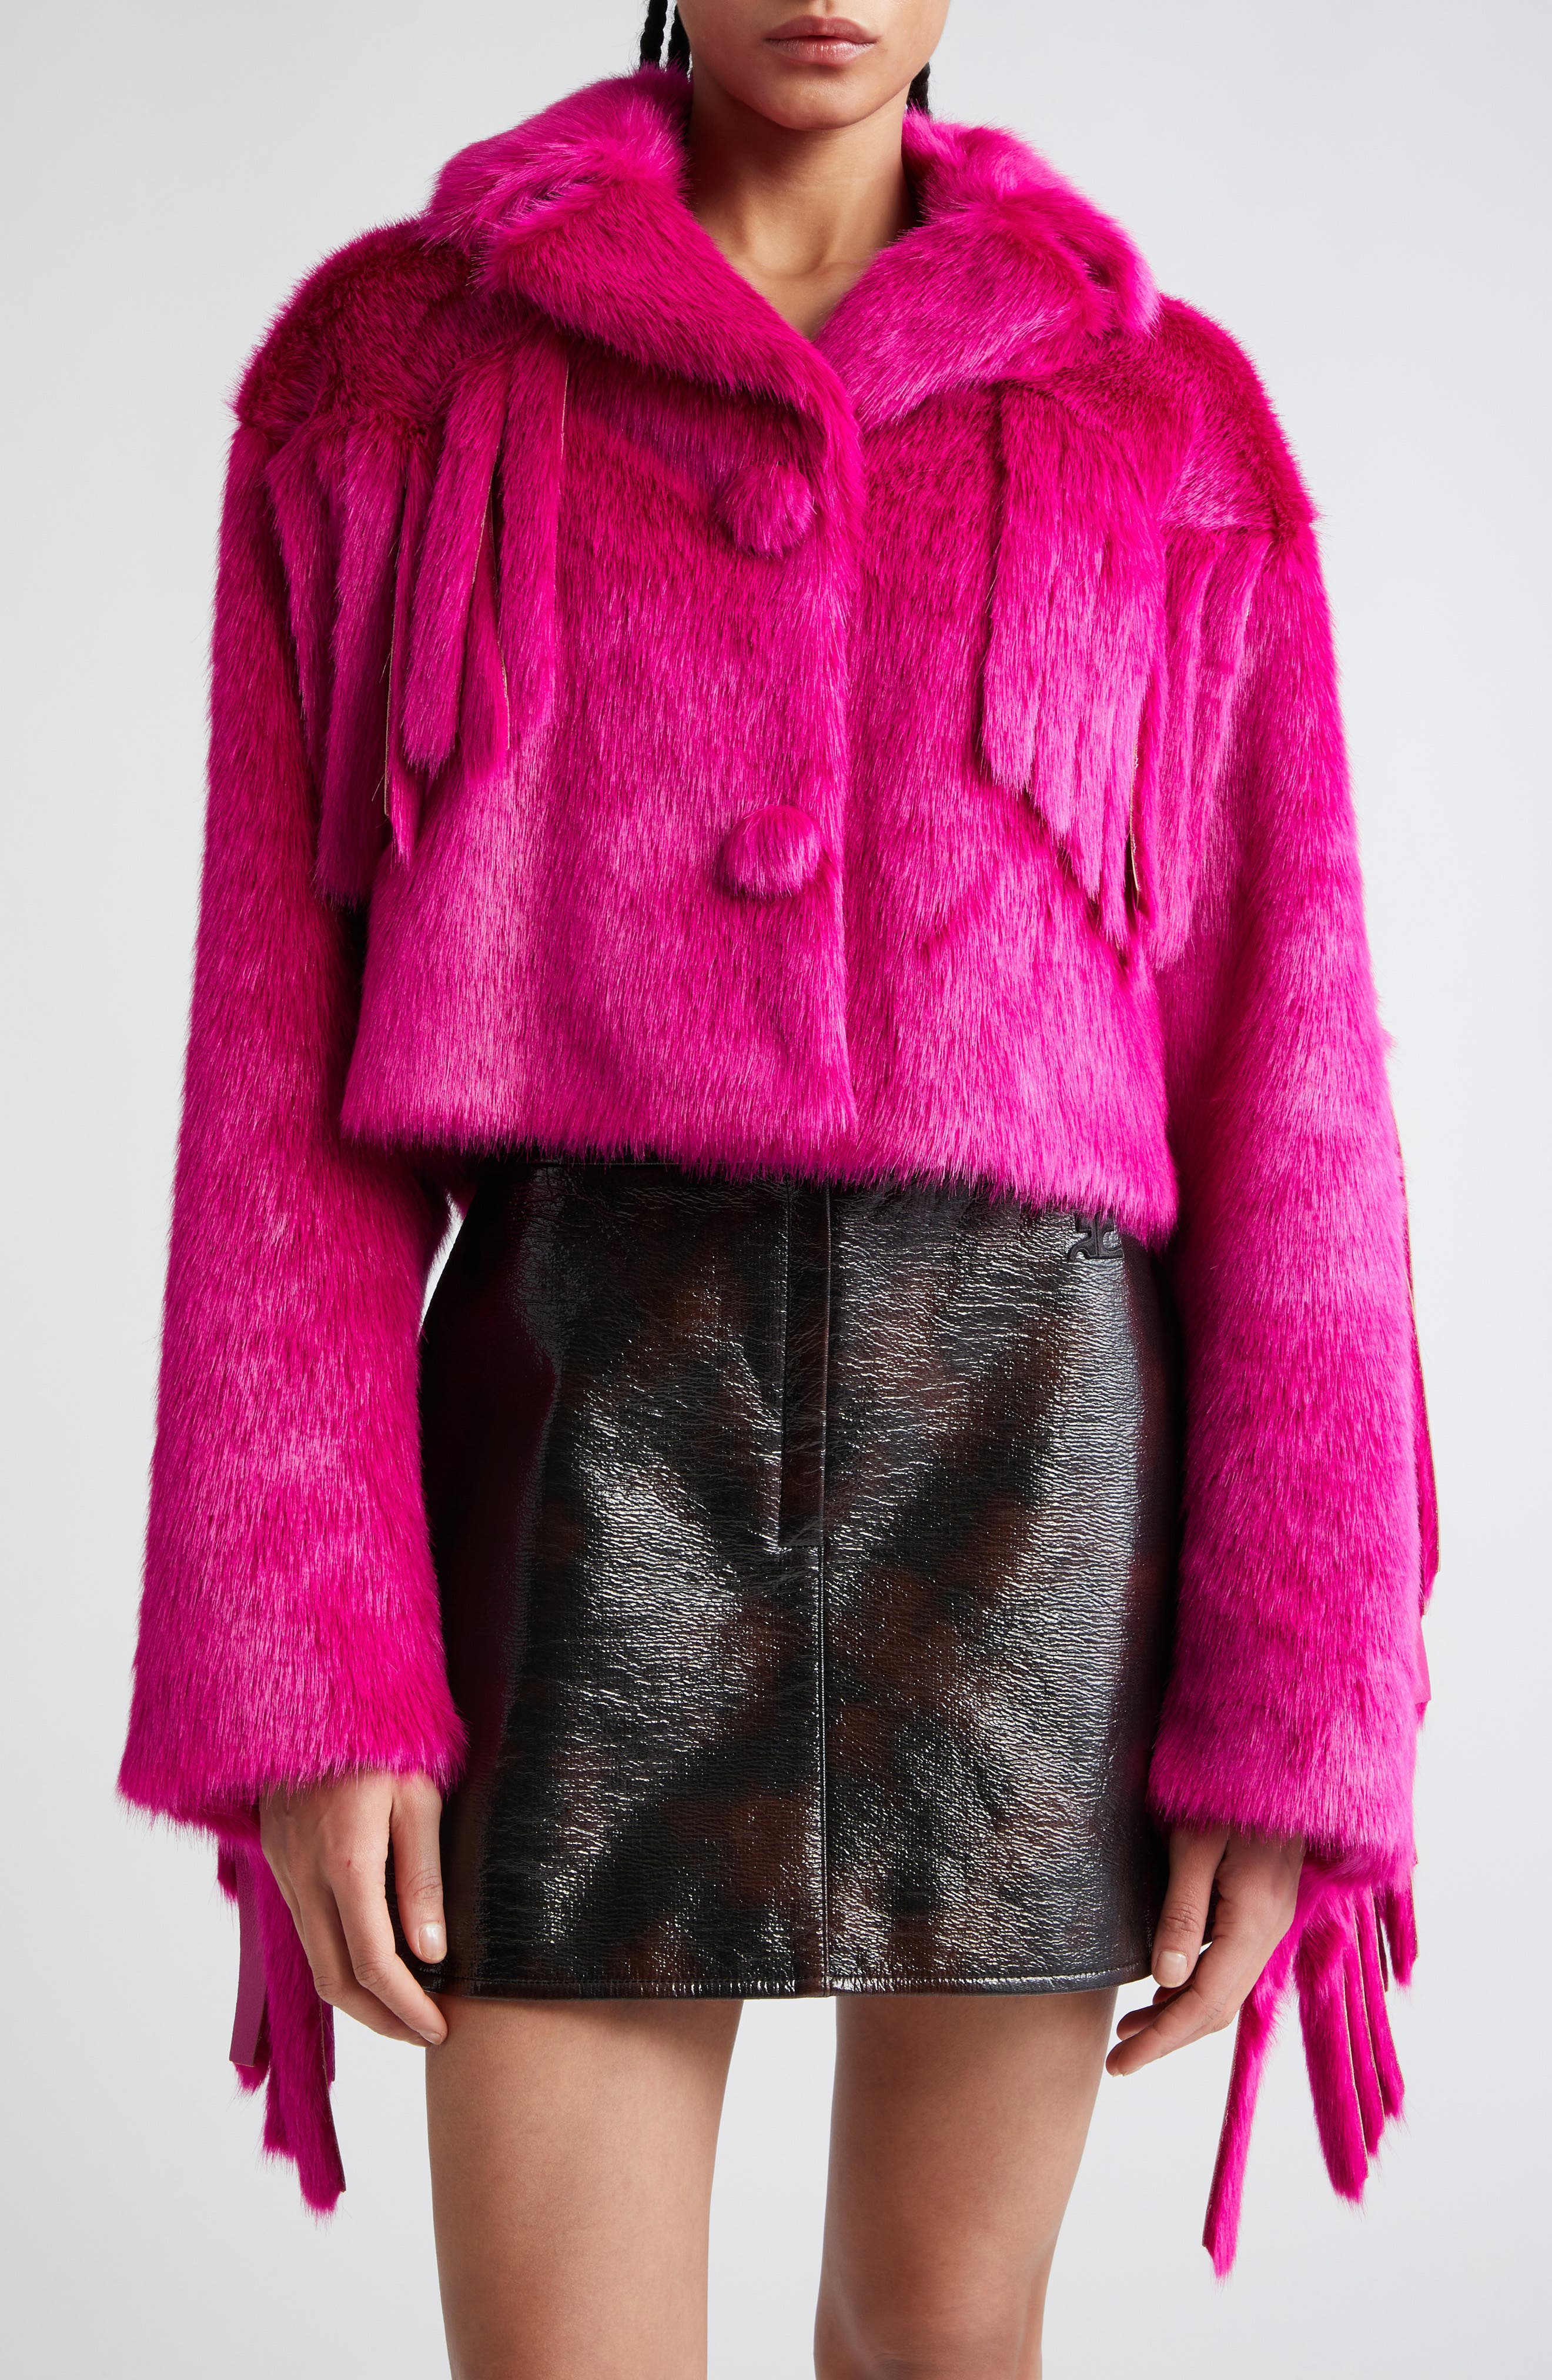 Women's Pink Faux Fur Coats